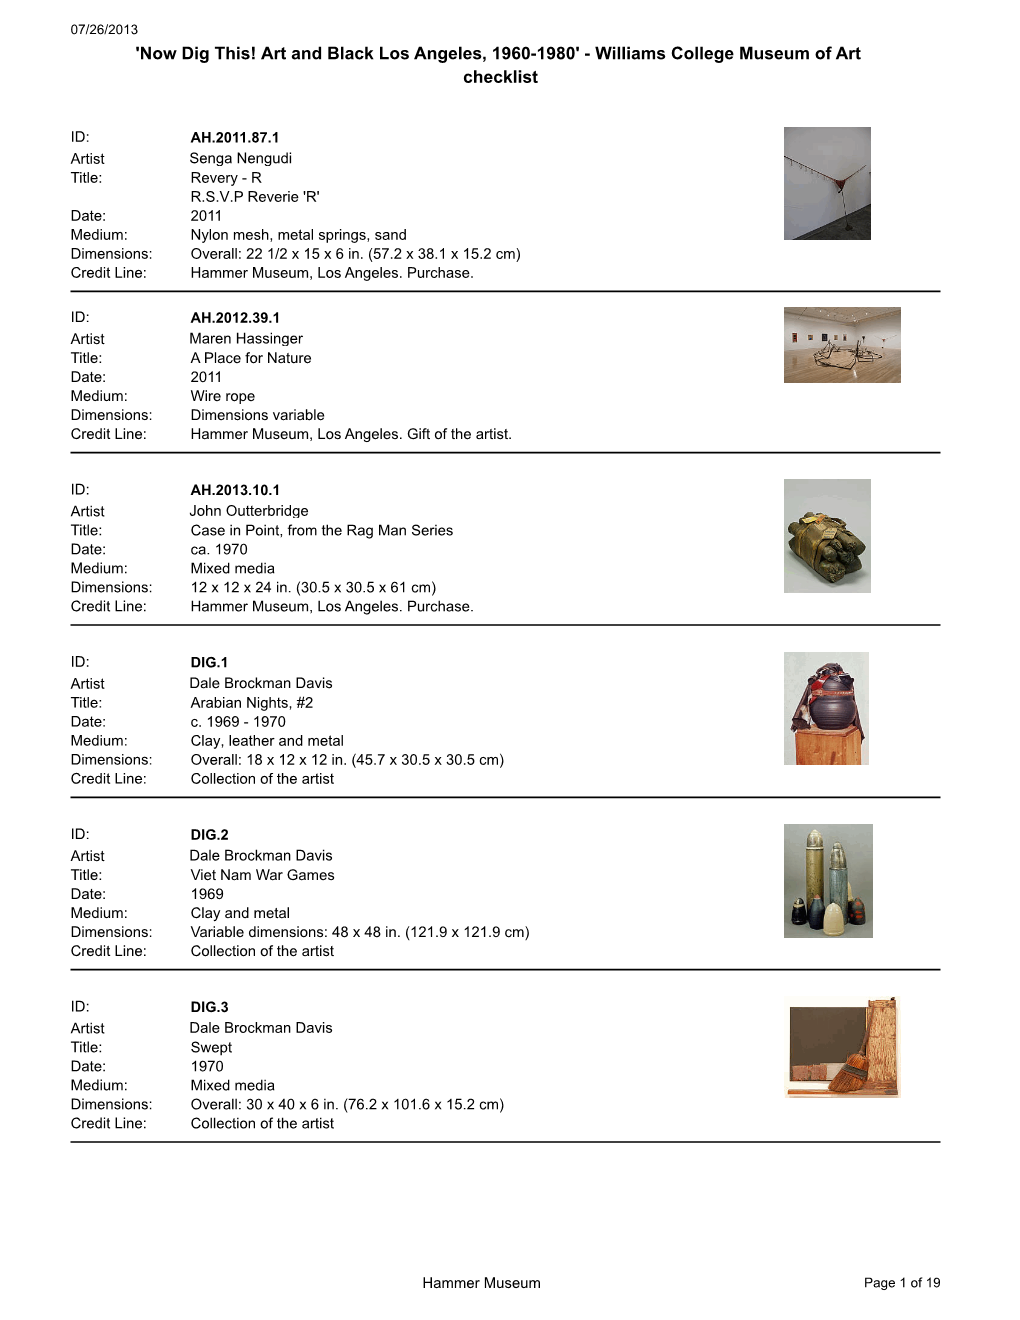 Williams College Museum of Art Checklist